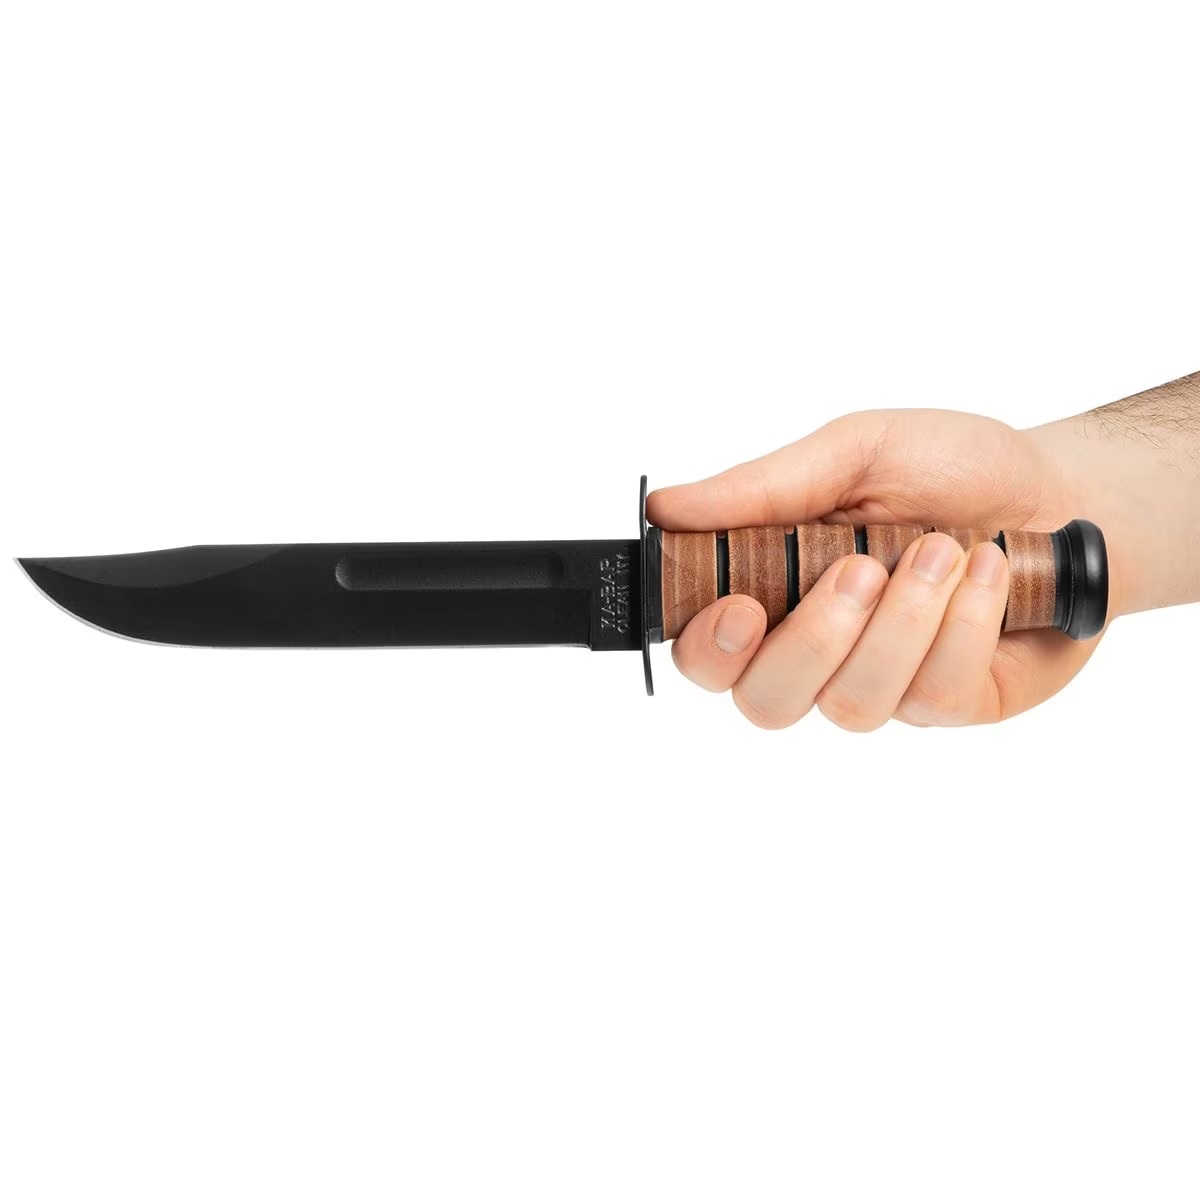 Ka-Bar USMC nož je legendarno orodje, razvito za Ameriško vojsko. Izdelan iz kakovostnega jekla 1095 Cro-Van, s črno epoksidno prevleko in vtisnjenimi črkami USMC. Udoben ročaj iz bivolje kože. Vključen usnjen etui. Vsestranski nož za vojaško in civilno uporabo. Kultni status.